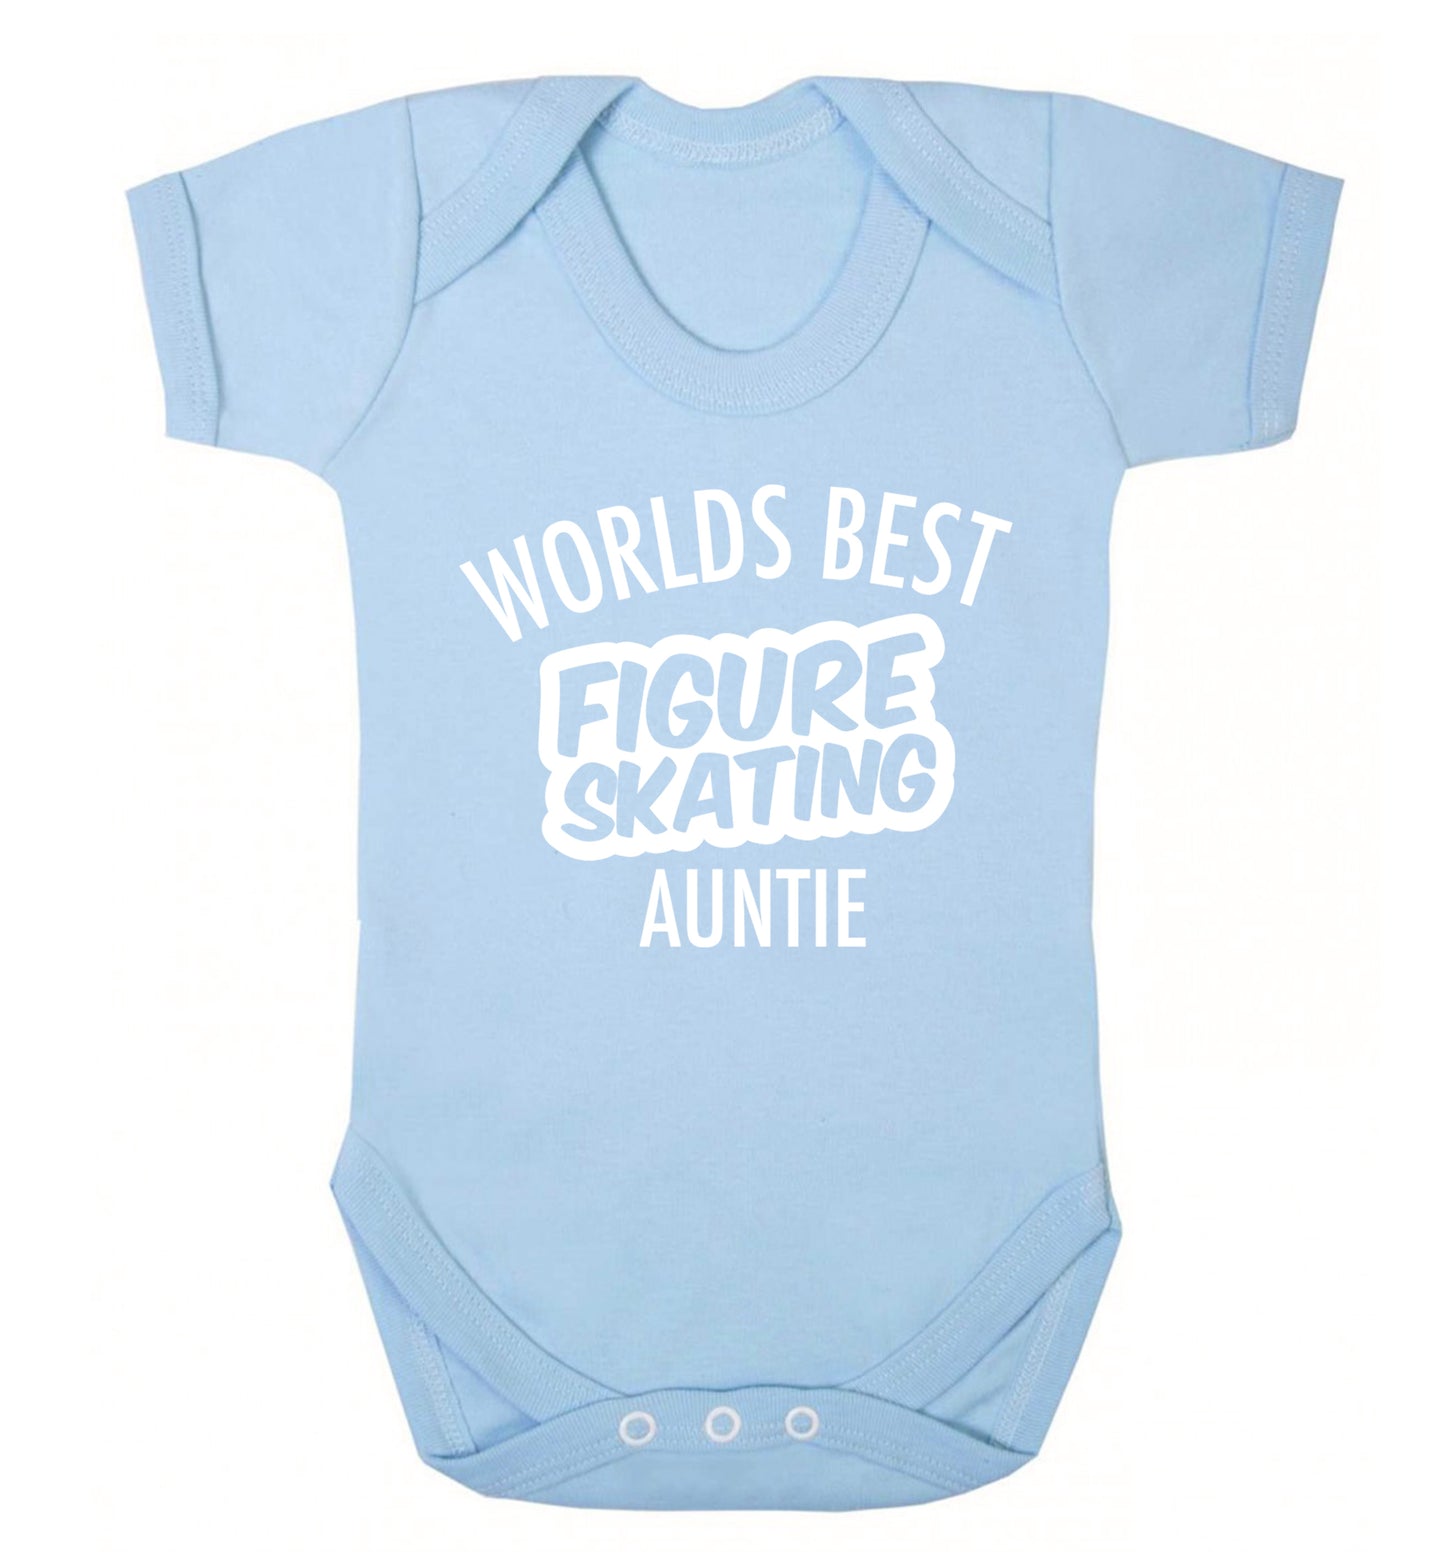 Worlds best figure skating auntie Baby Vest pale blue 18-24 months